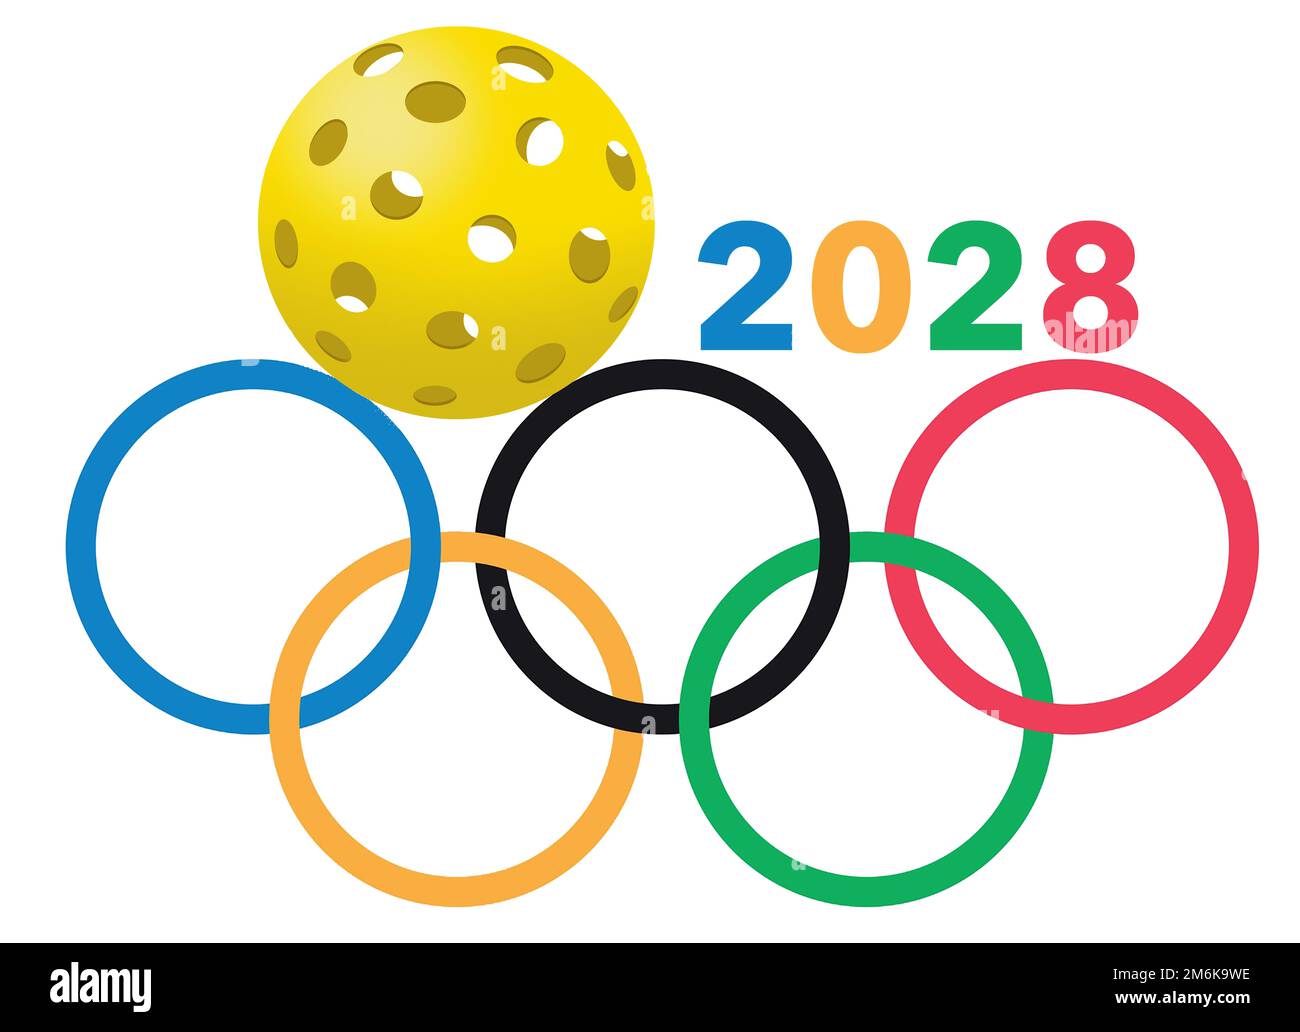 Dans cette illustration de 3 jours, les boules de pique-nichon sont représentées en couleurs et en position ressemblant au logo des Jeux Olympiques. Le pickle olympique est une possibilité pour 2028 A. Banque D'Images